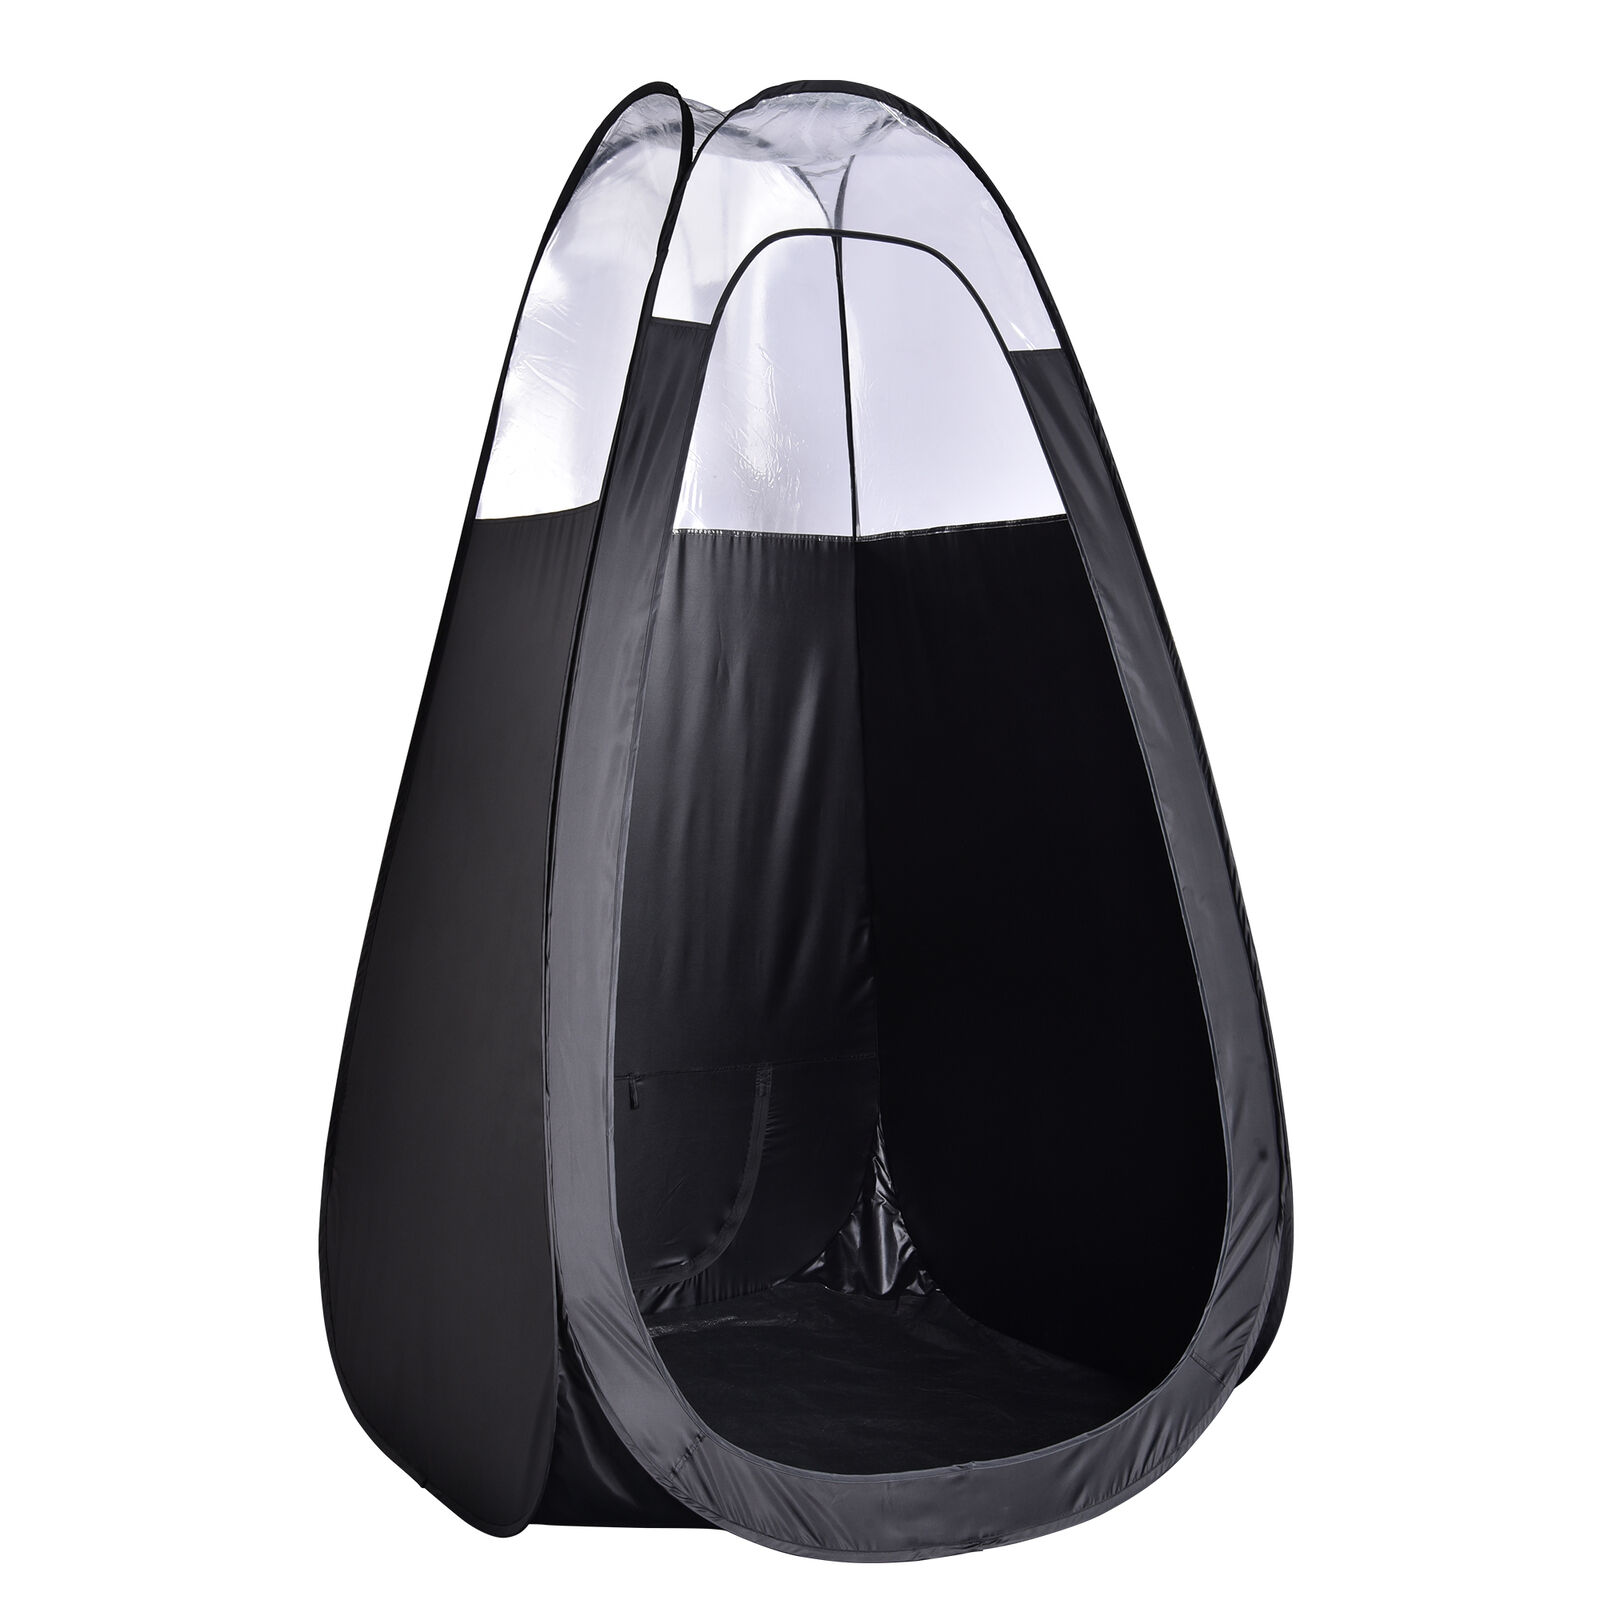 海外輸入】 The Original Instant Pop Up Airbrush Spray Tanning Tent-Black【並行輸入品】  - ocjapan.com.mm